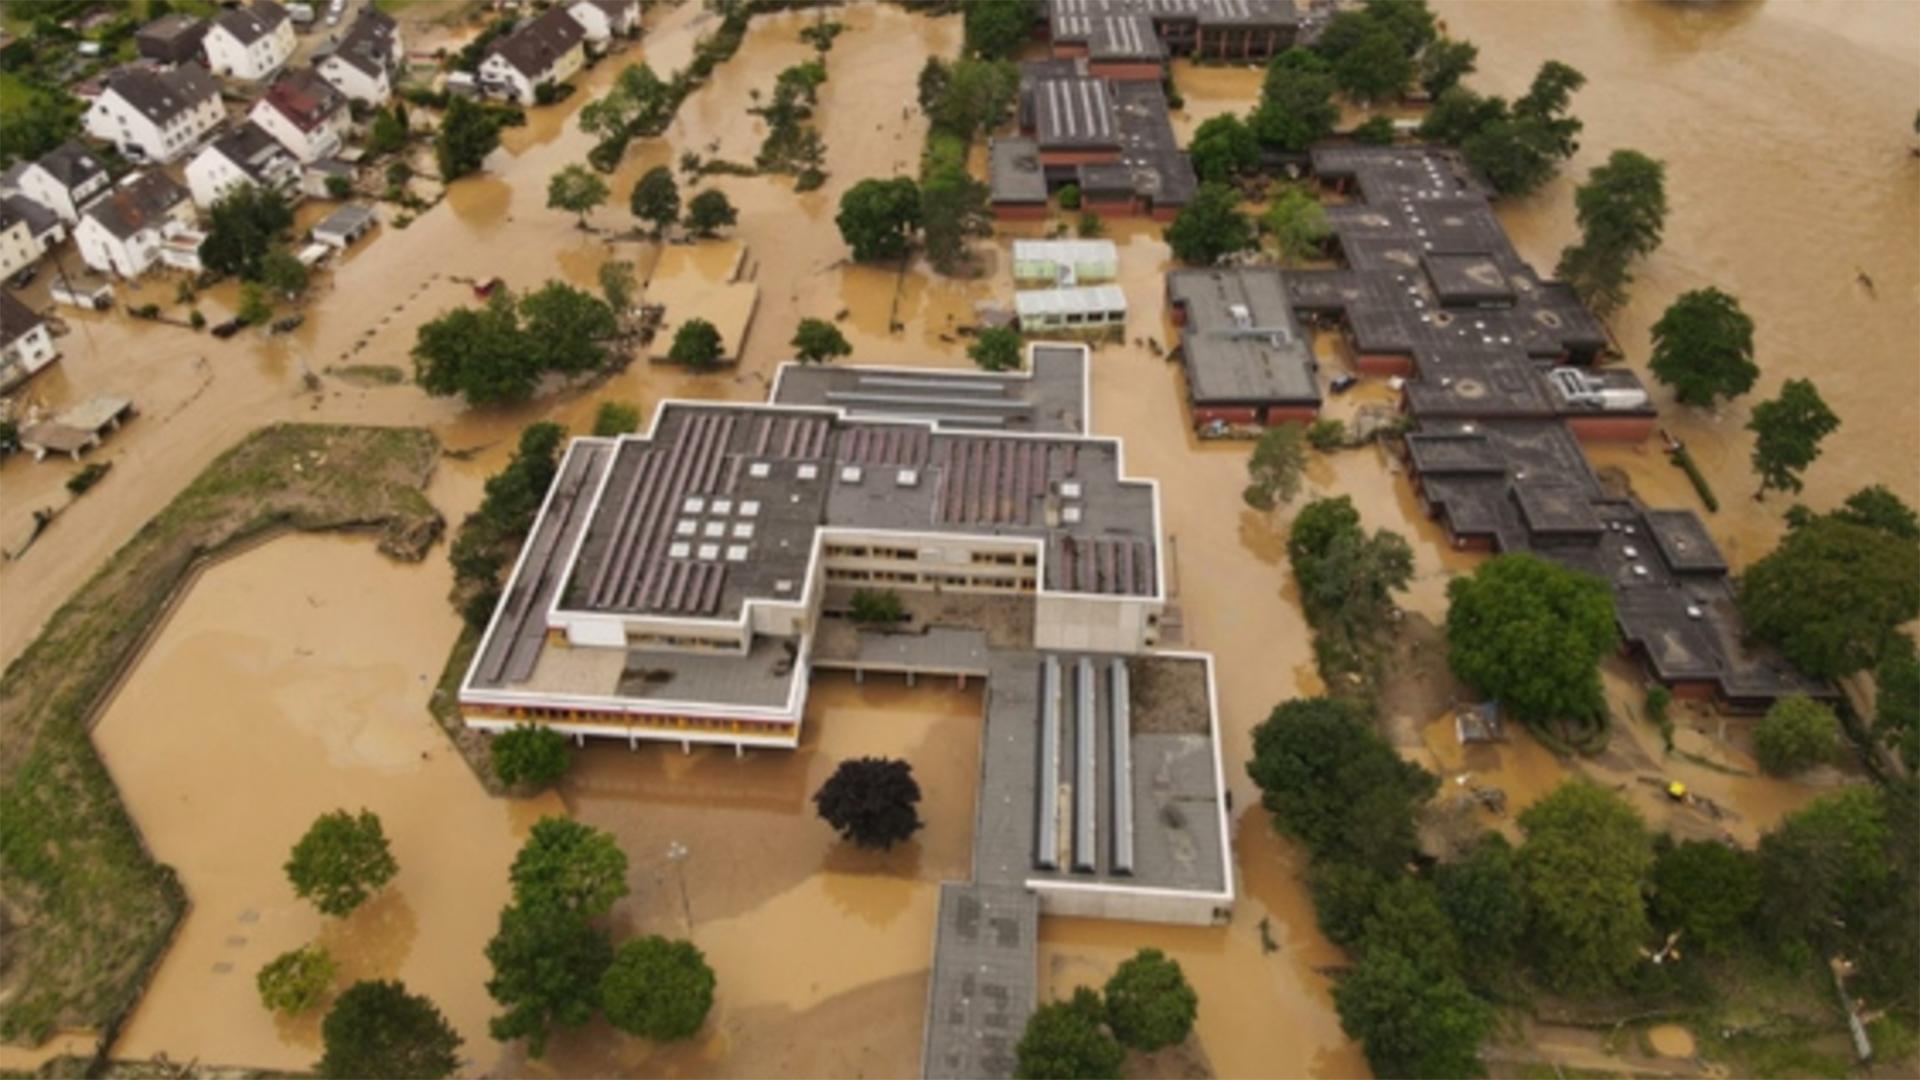 Luftaufnahme der überfluteten Erich-Kästner-Realschule in Bad Neuenahr. | Erich-Kästner-Realschule Bad Neuenahr